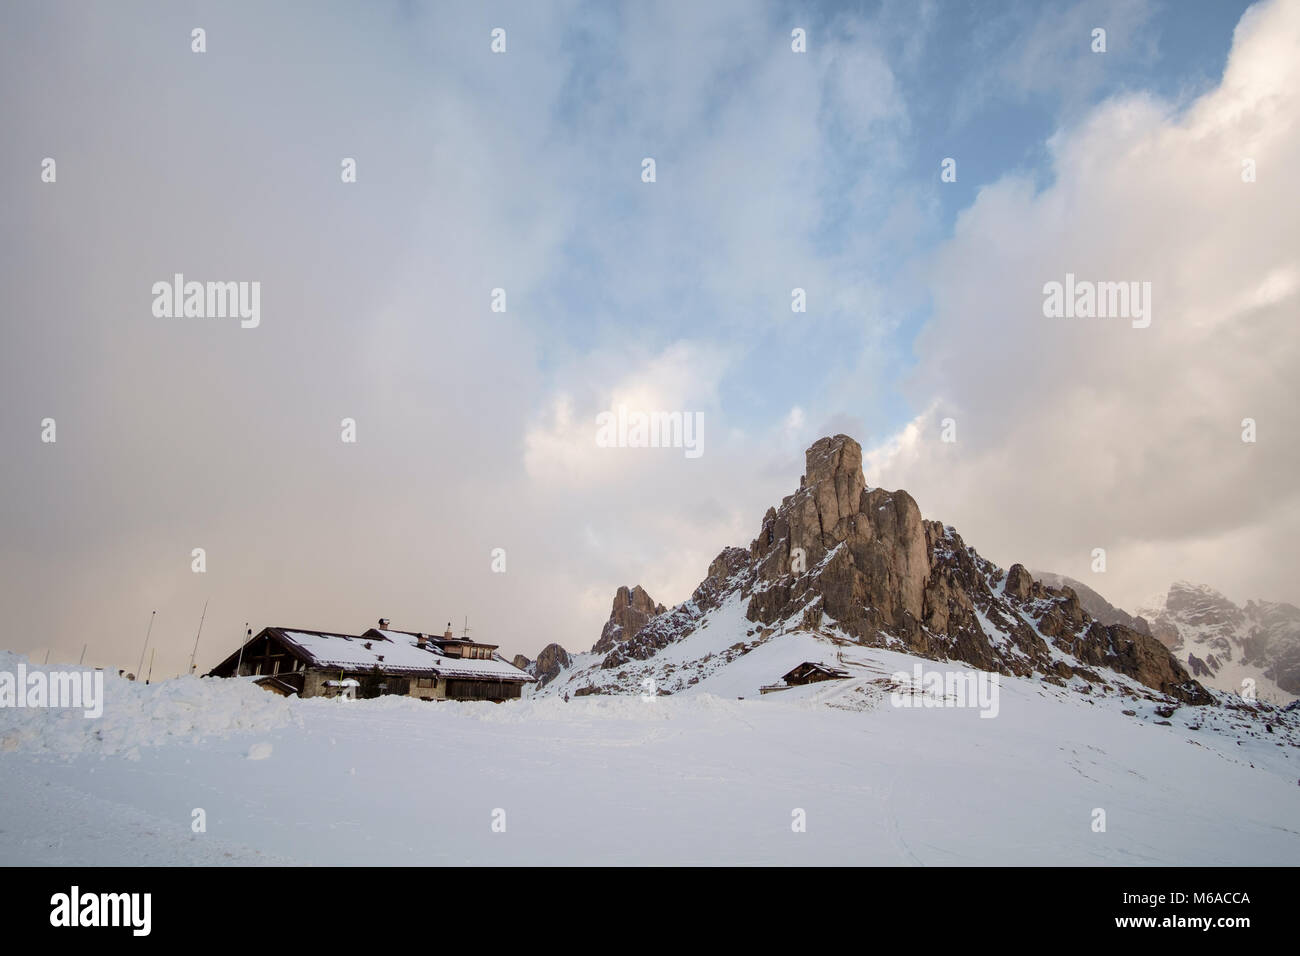 Fantastische Winterlandschaft in der Nähe von Passo Giau - Dolomiten - Italien Stockfoto